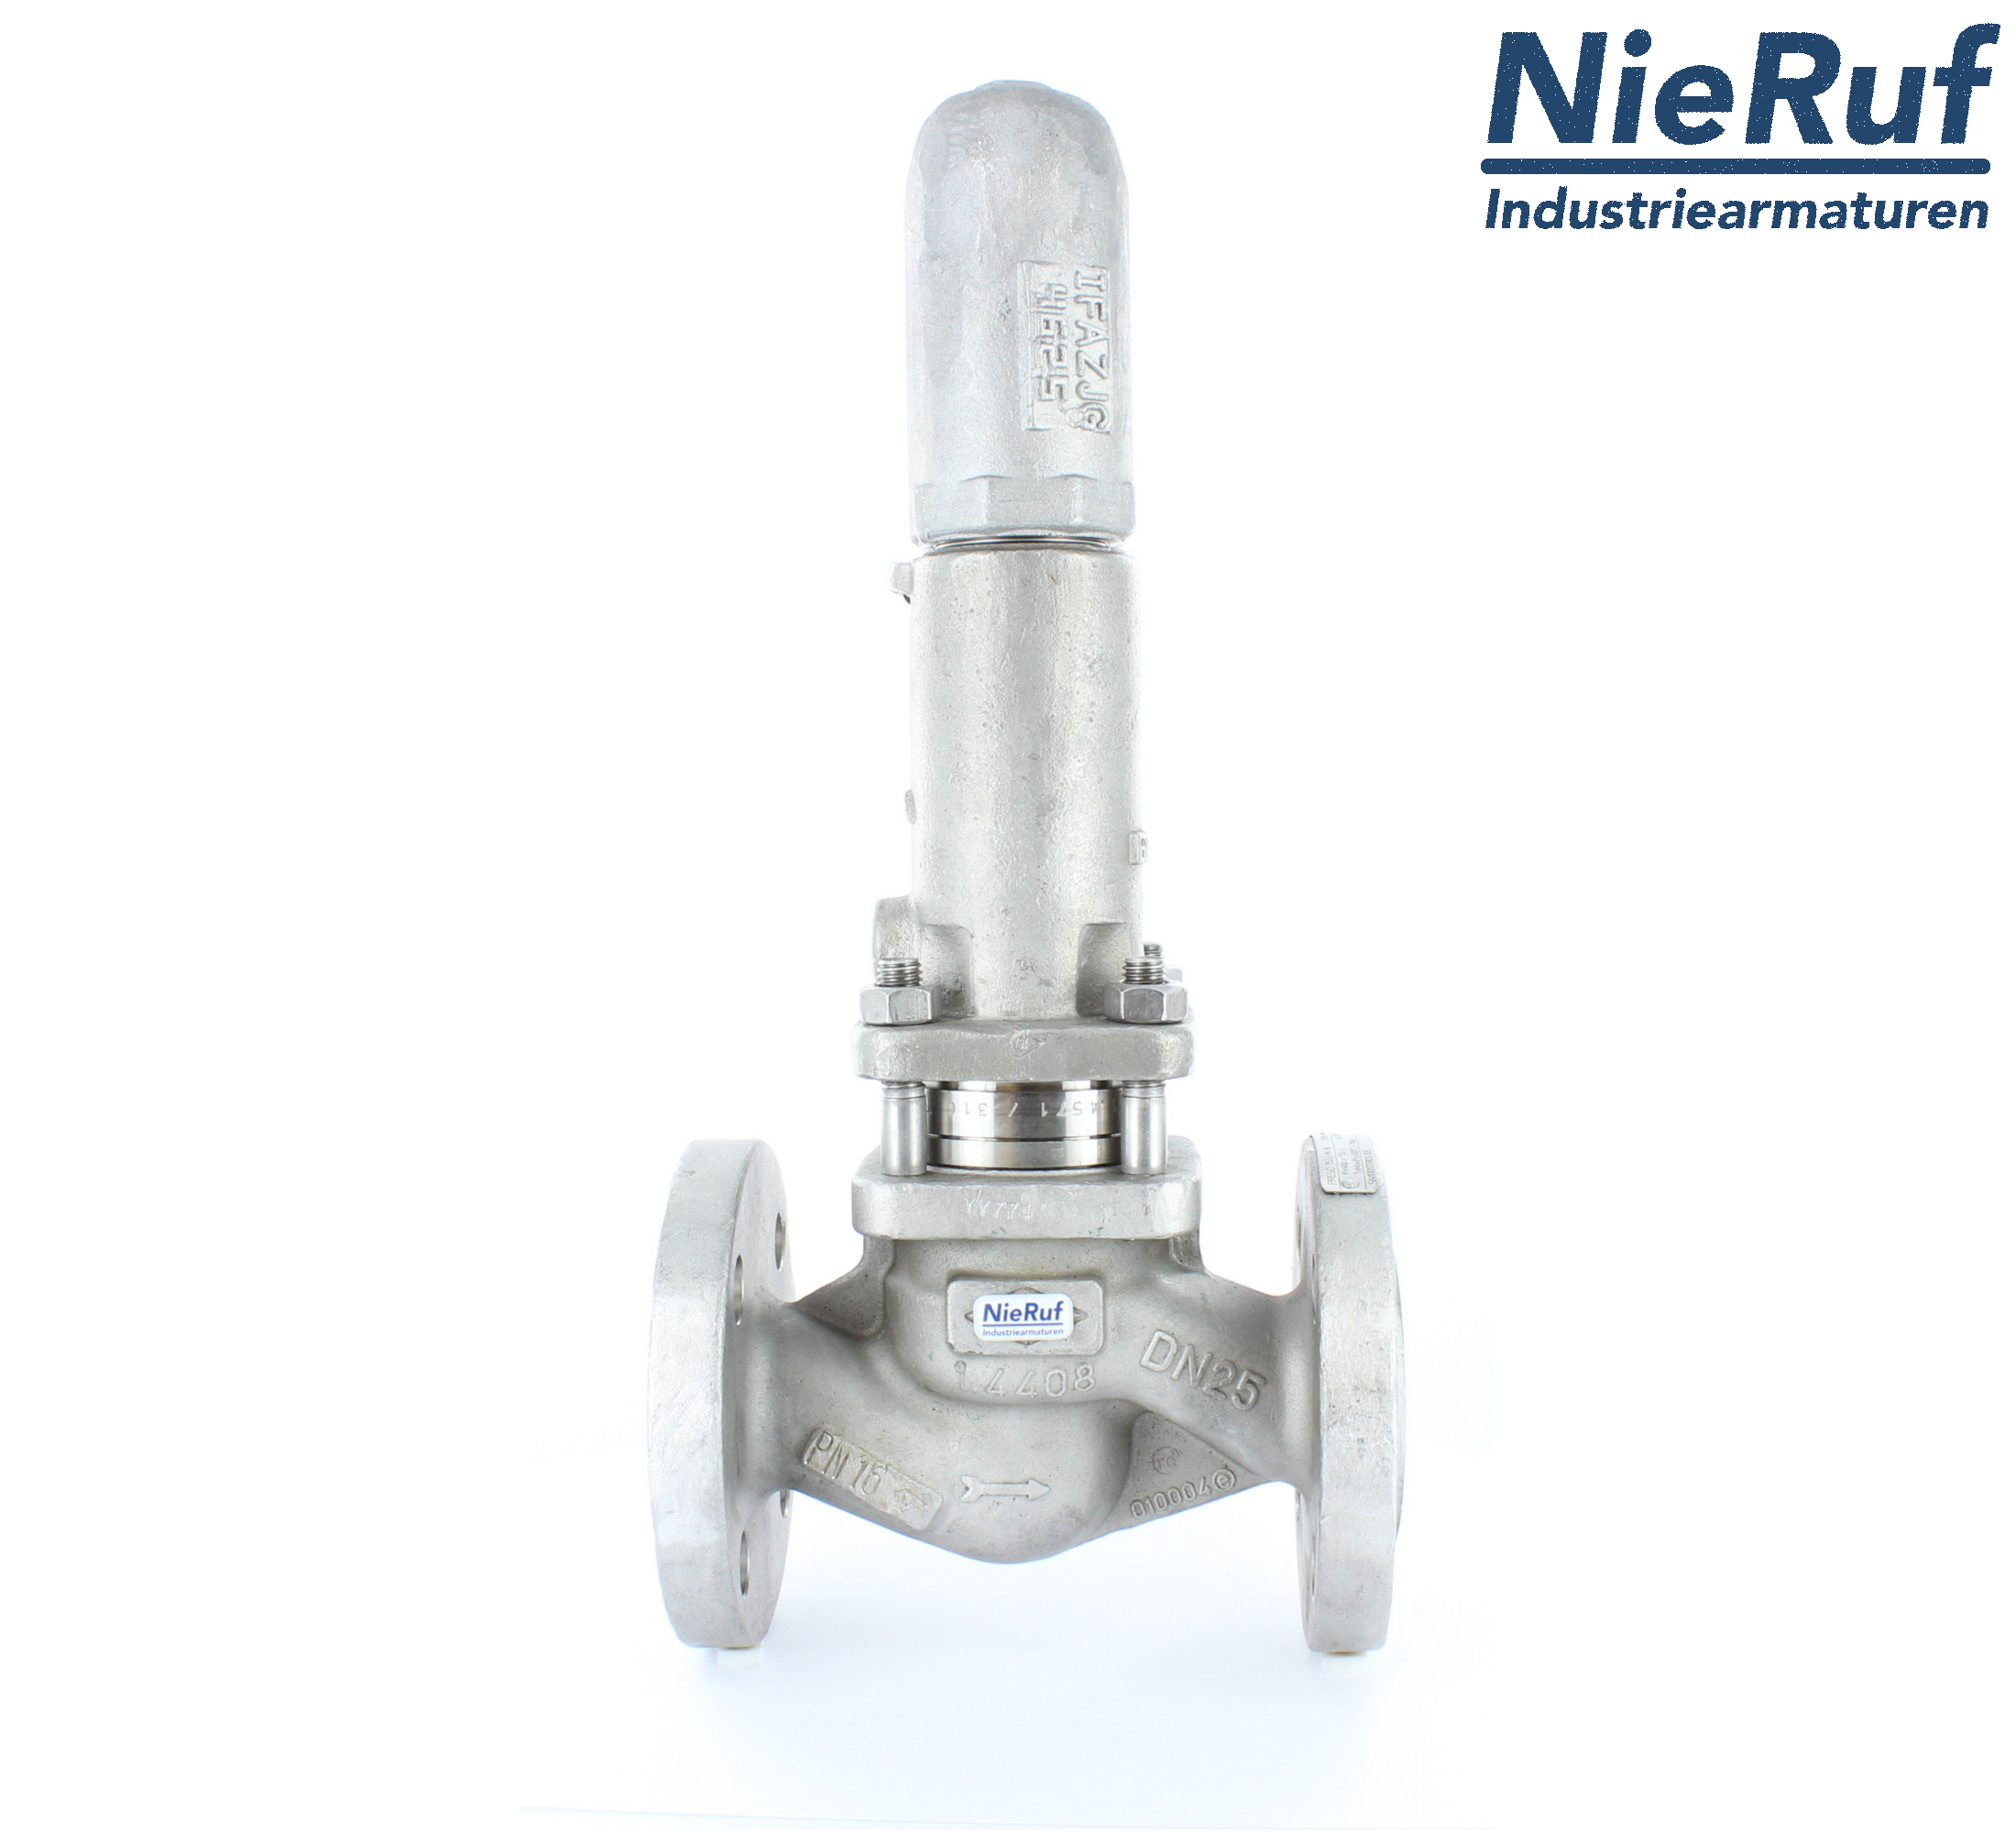 piston overflow valve DN 40 UV13 cast iron 1.0619+N 4,0 - 10,0 bar